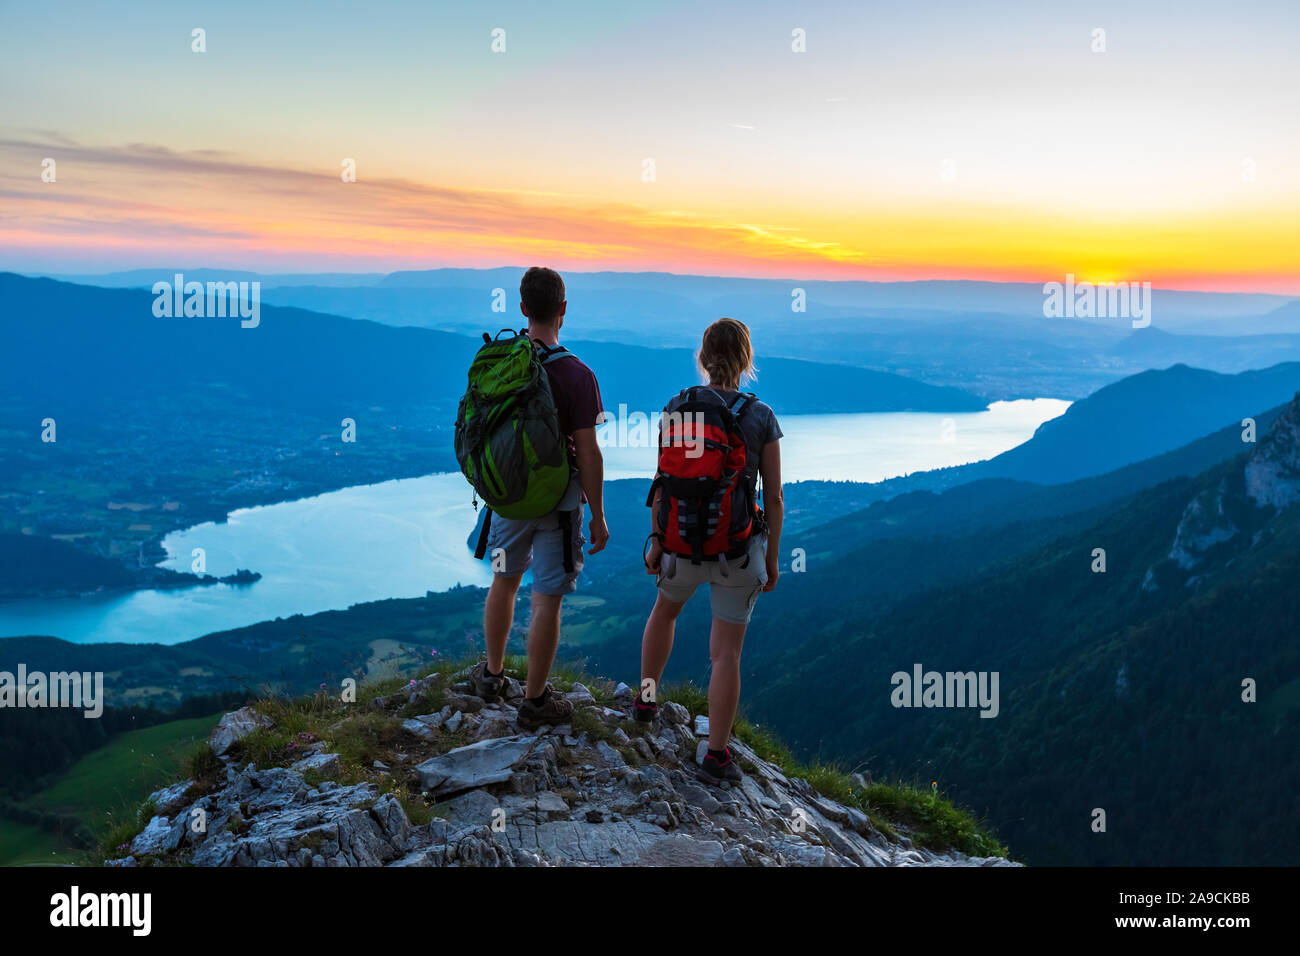 Gli escursionisti gode di vista panoramica della valle con il lago al tramonto, giovane godendo esterna di estate trekking in montagna, uno stile di vita attivo, due persone backpacking Foto Stock